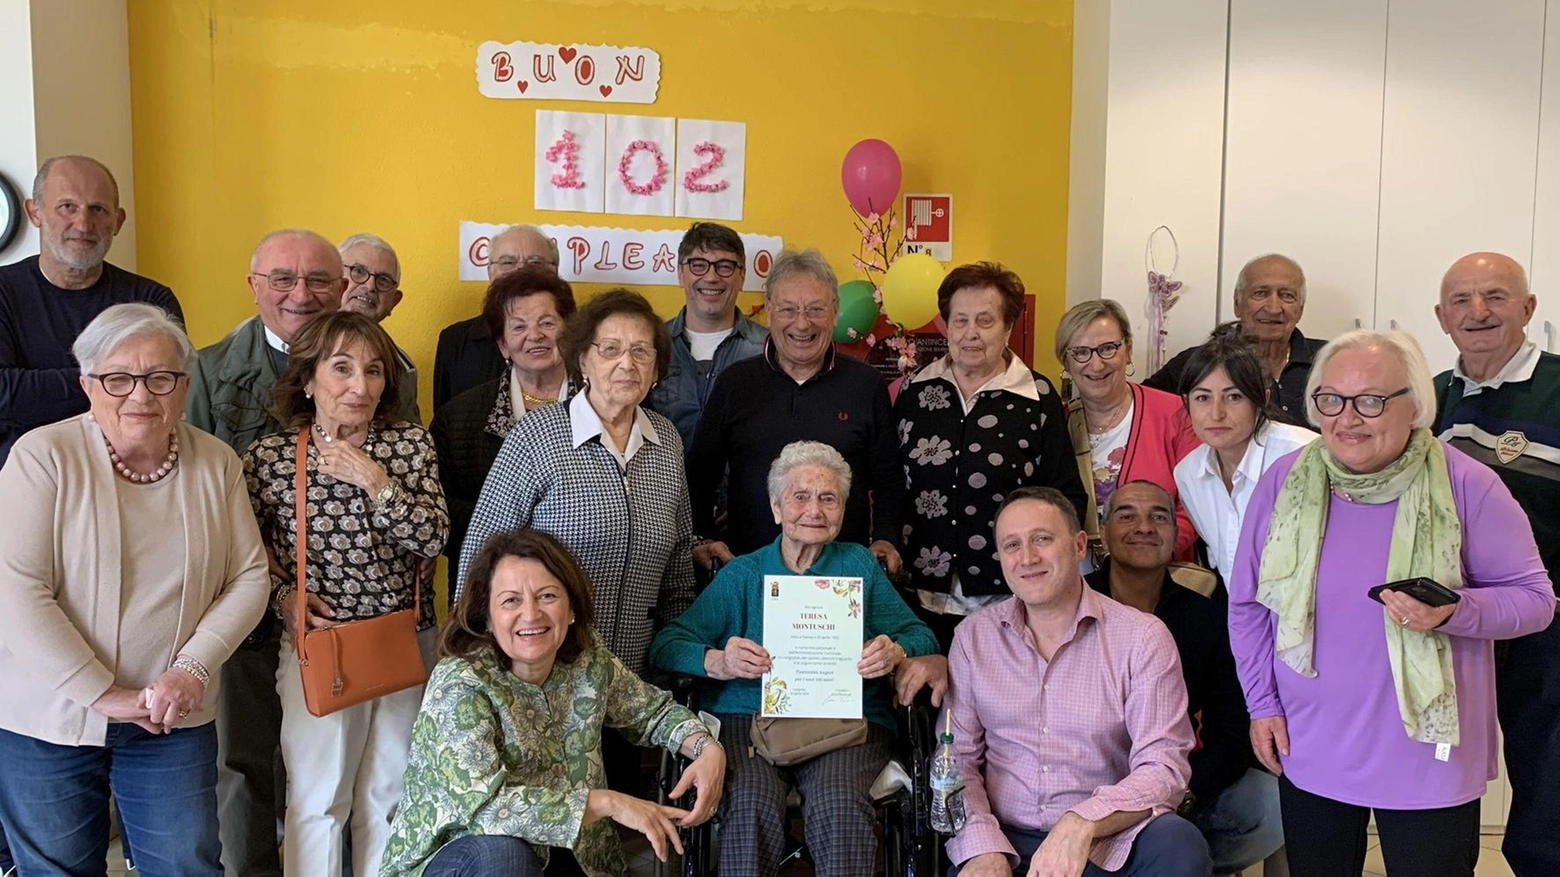 Teresa Montuschi, 102 anni, in ottima forma, festeggiata a Cotignola. Gioca a carte, pedala e riceve auguri per il traguardo centenario.